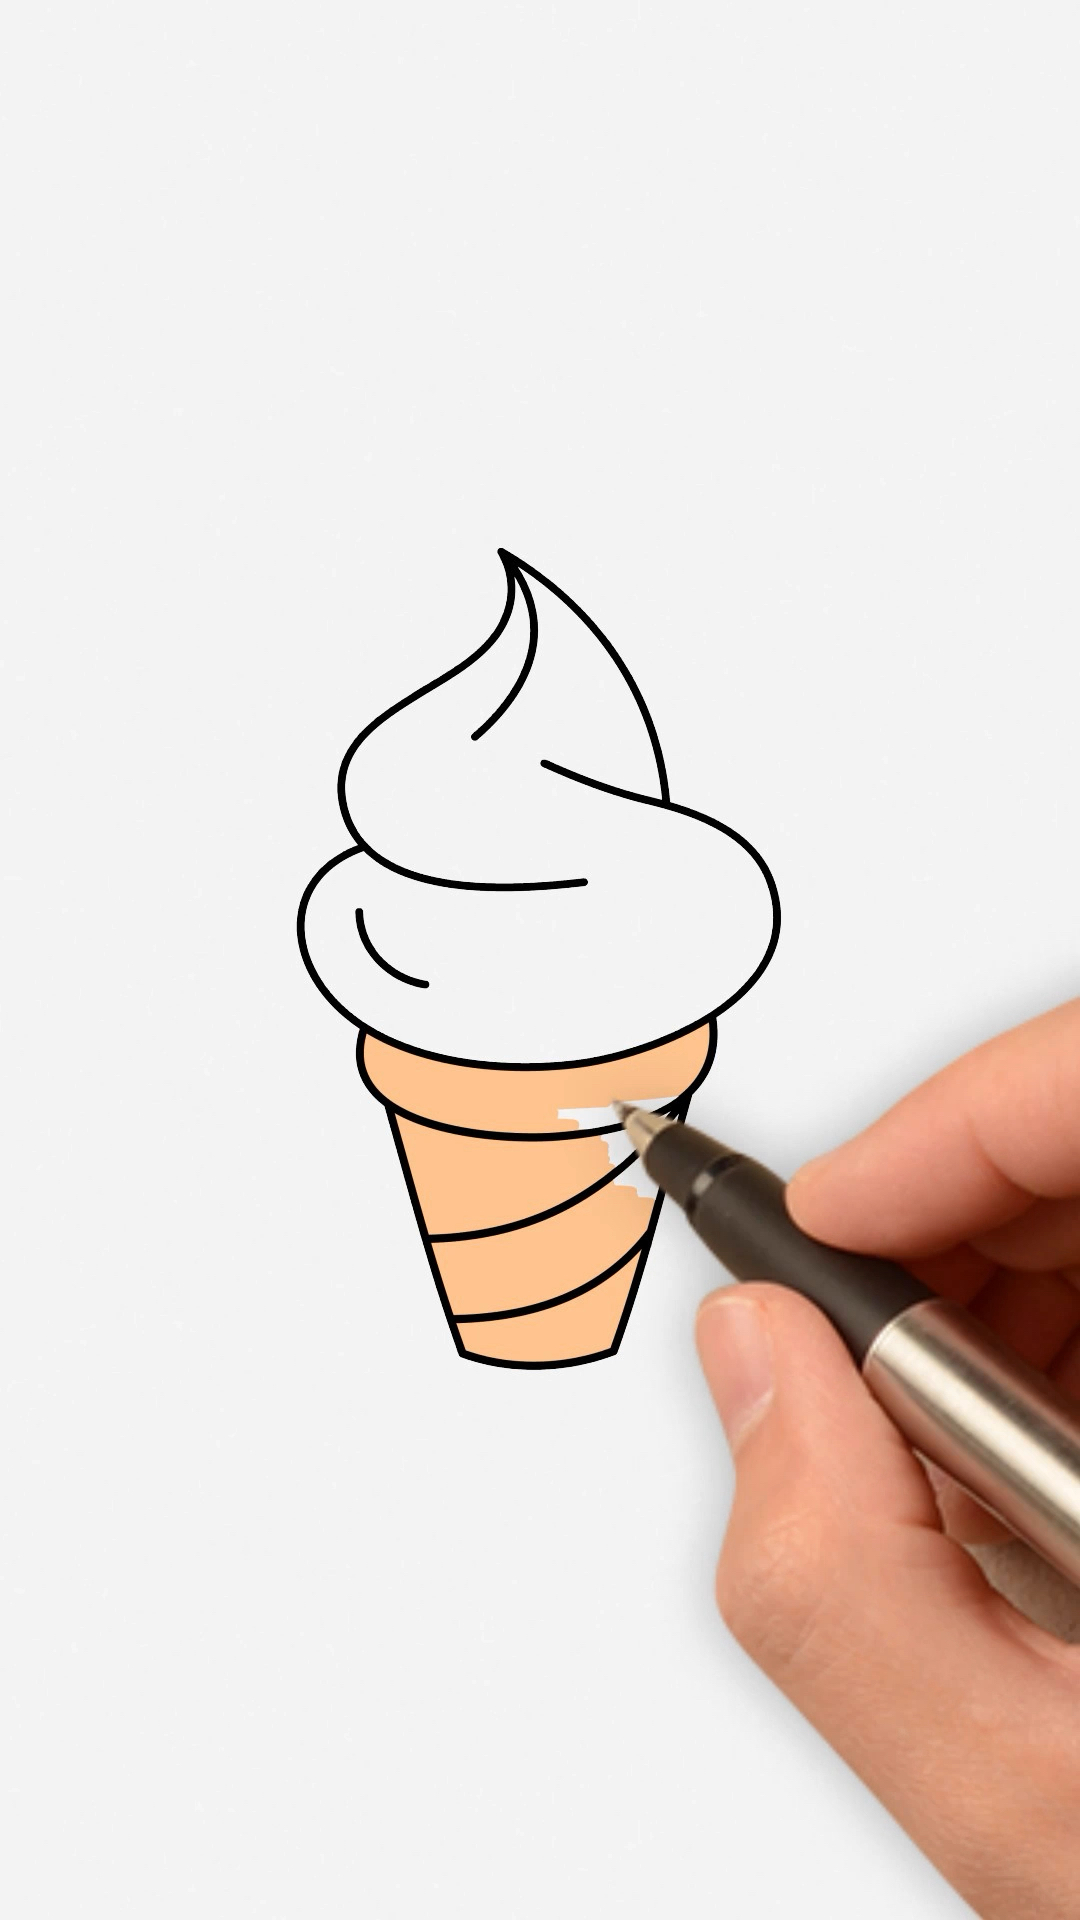 100种冰淇淋简笔画教程图片